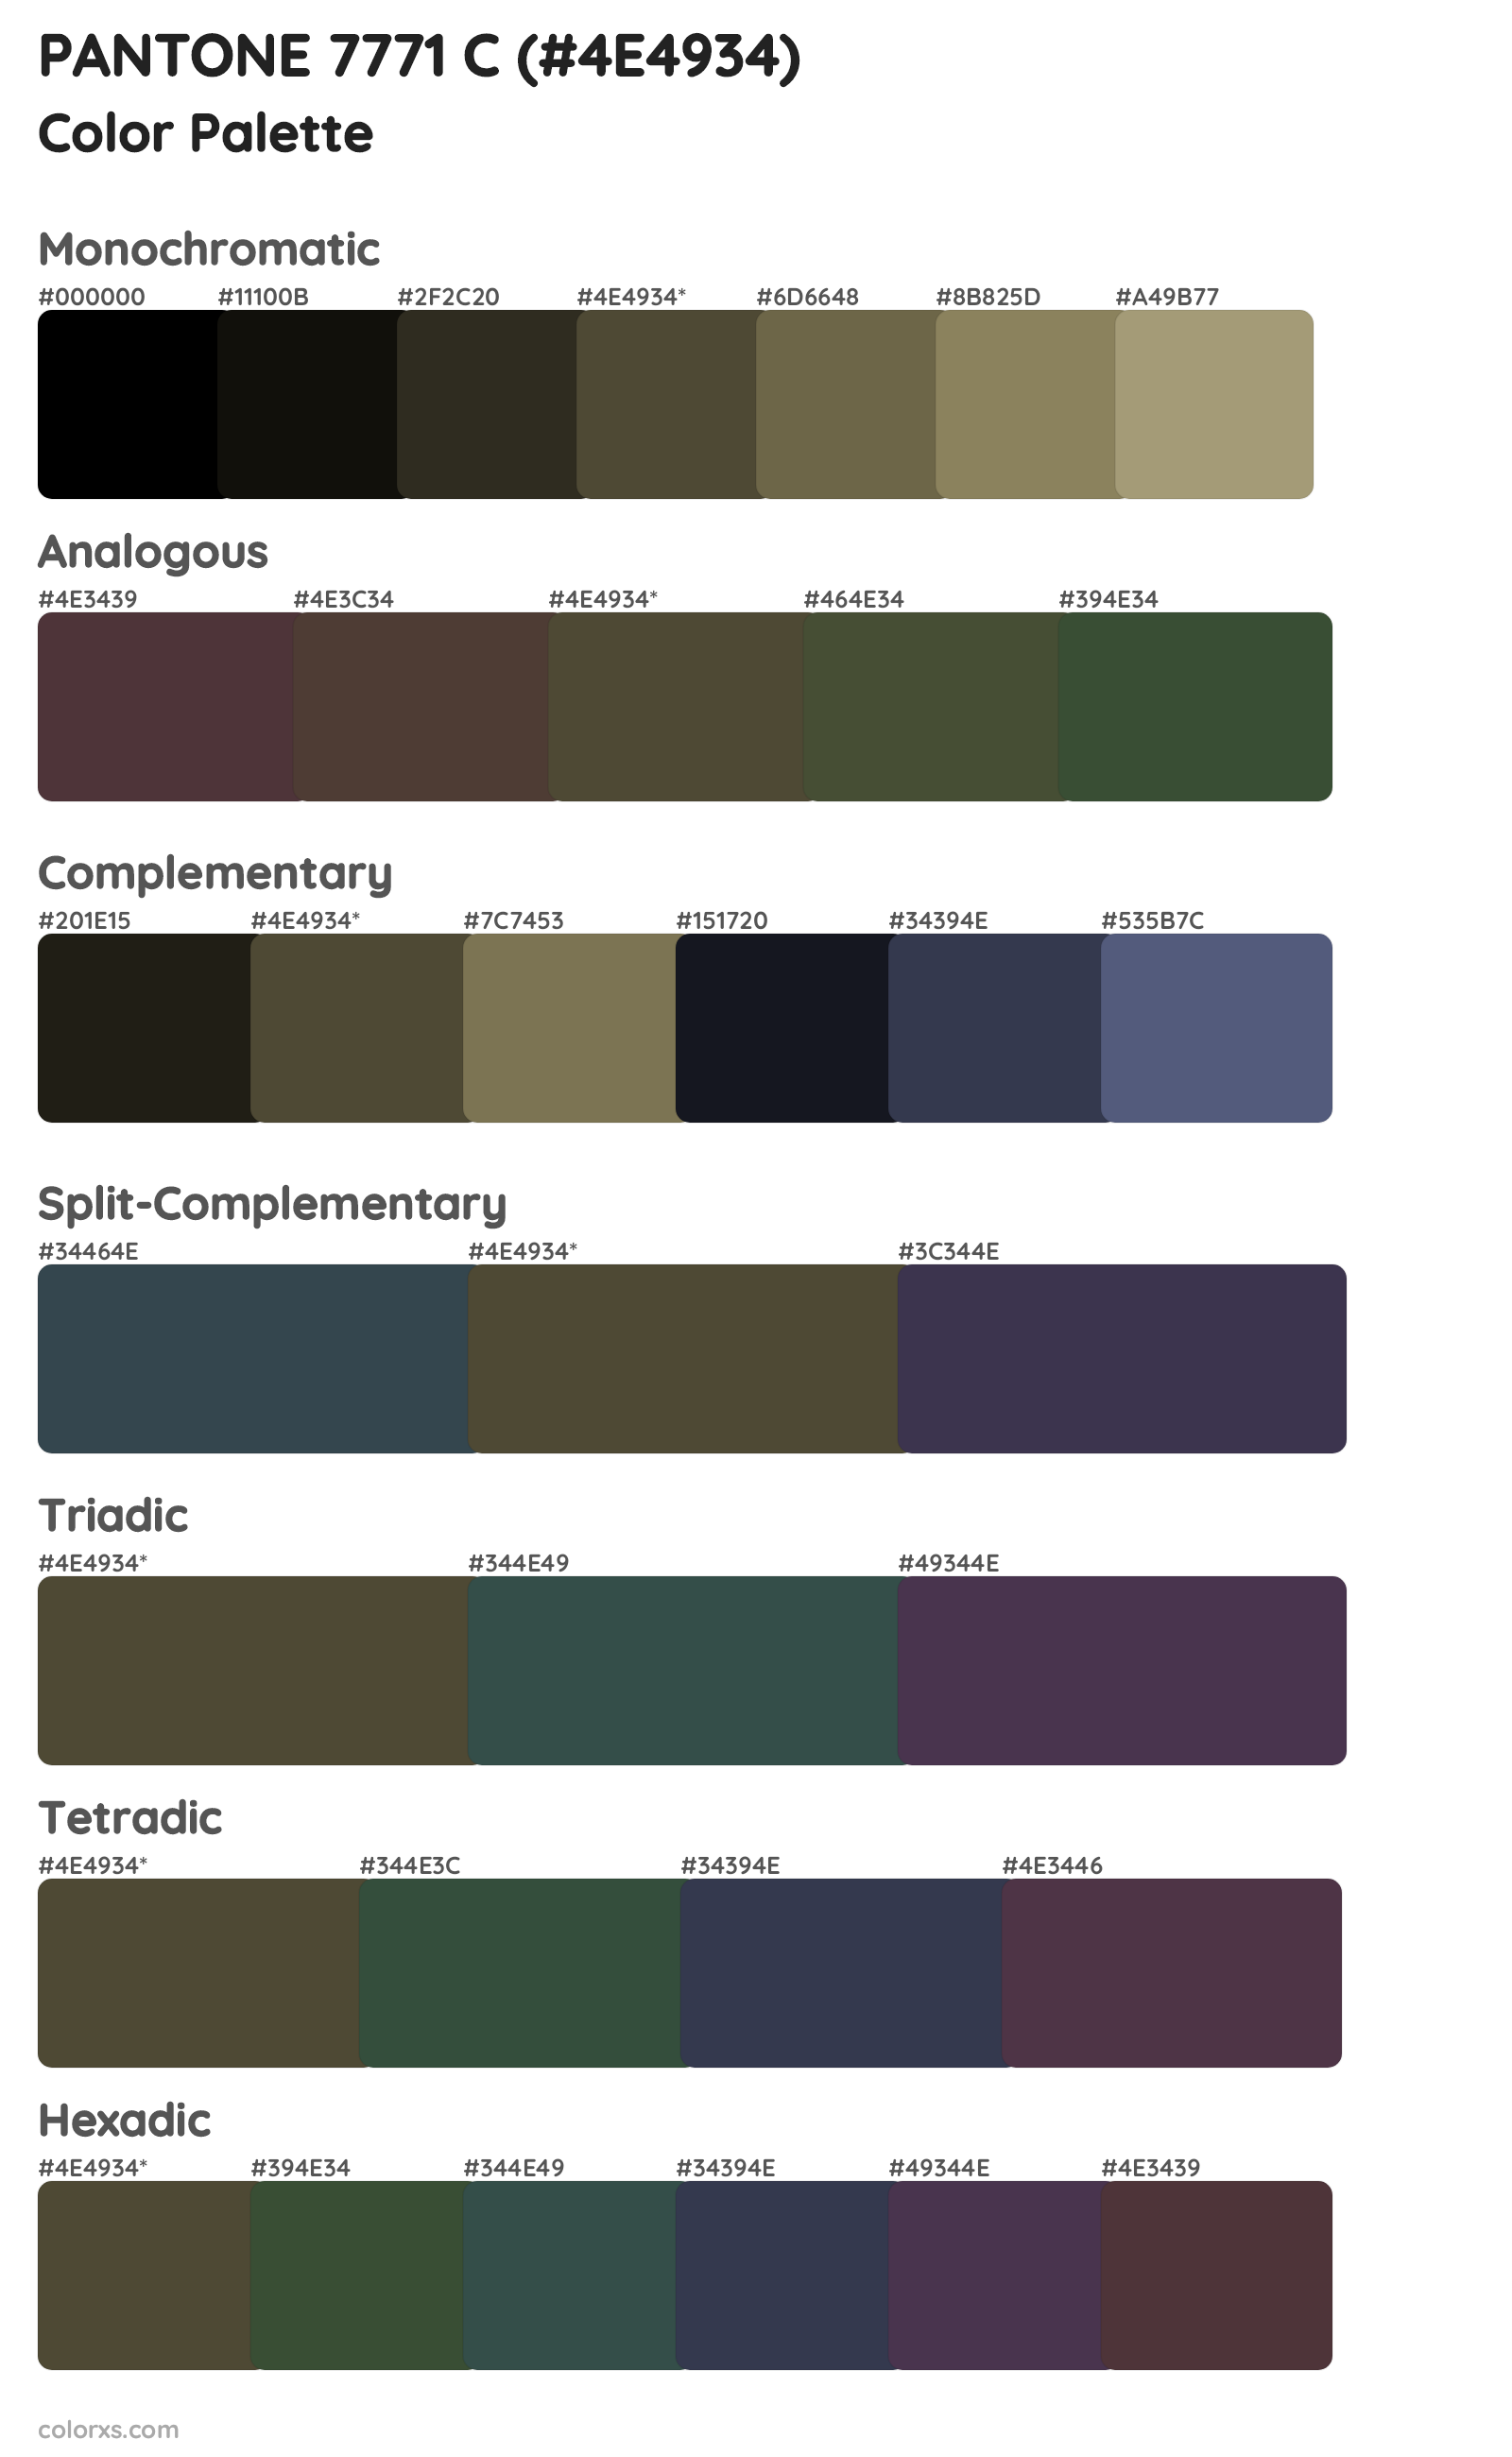 PANTONE 7771 C Color Scheme Palettes